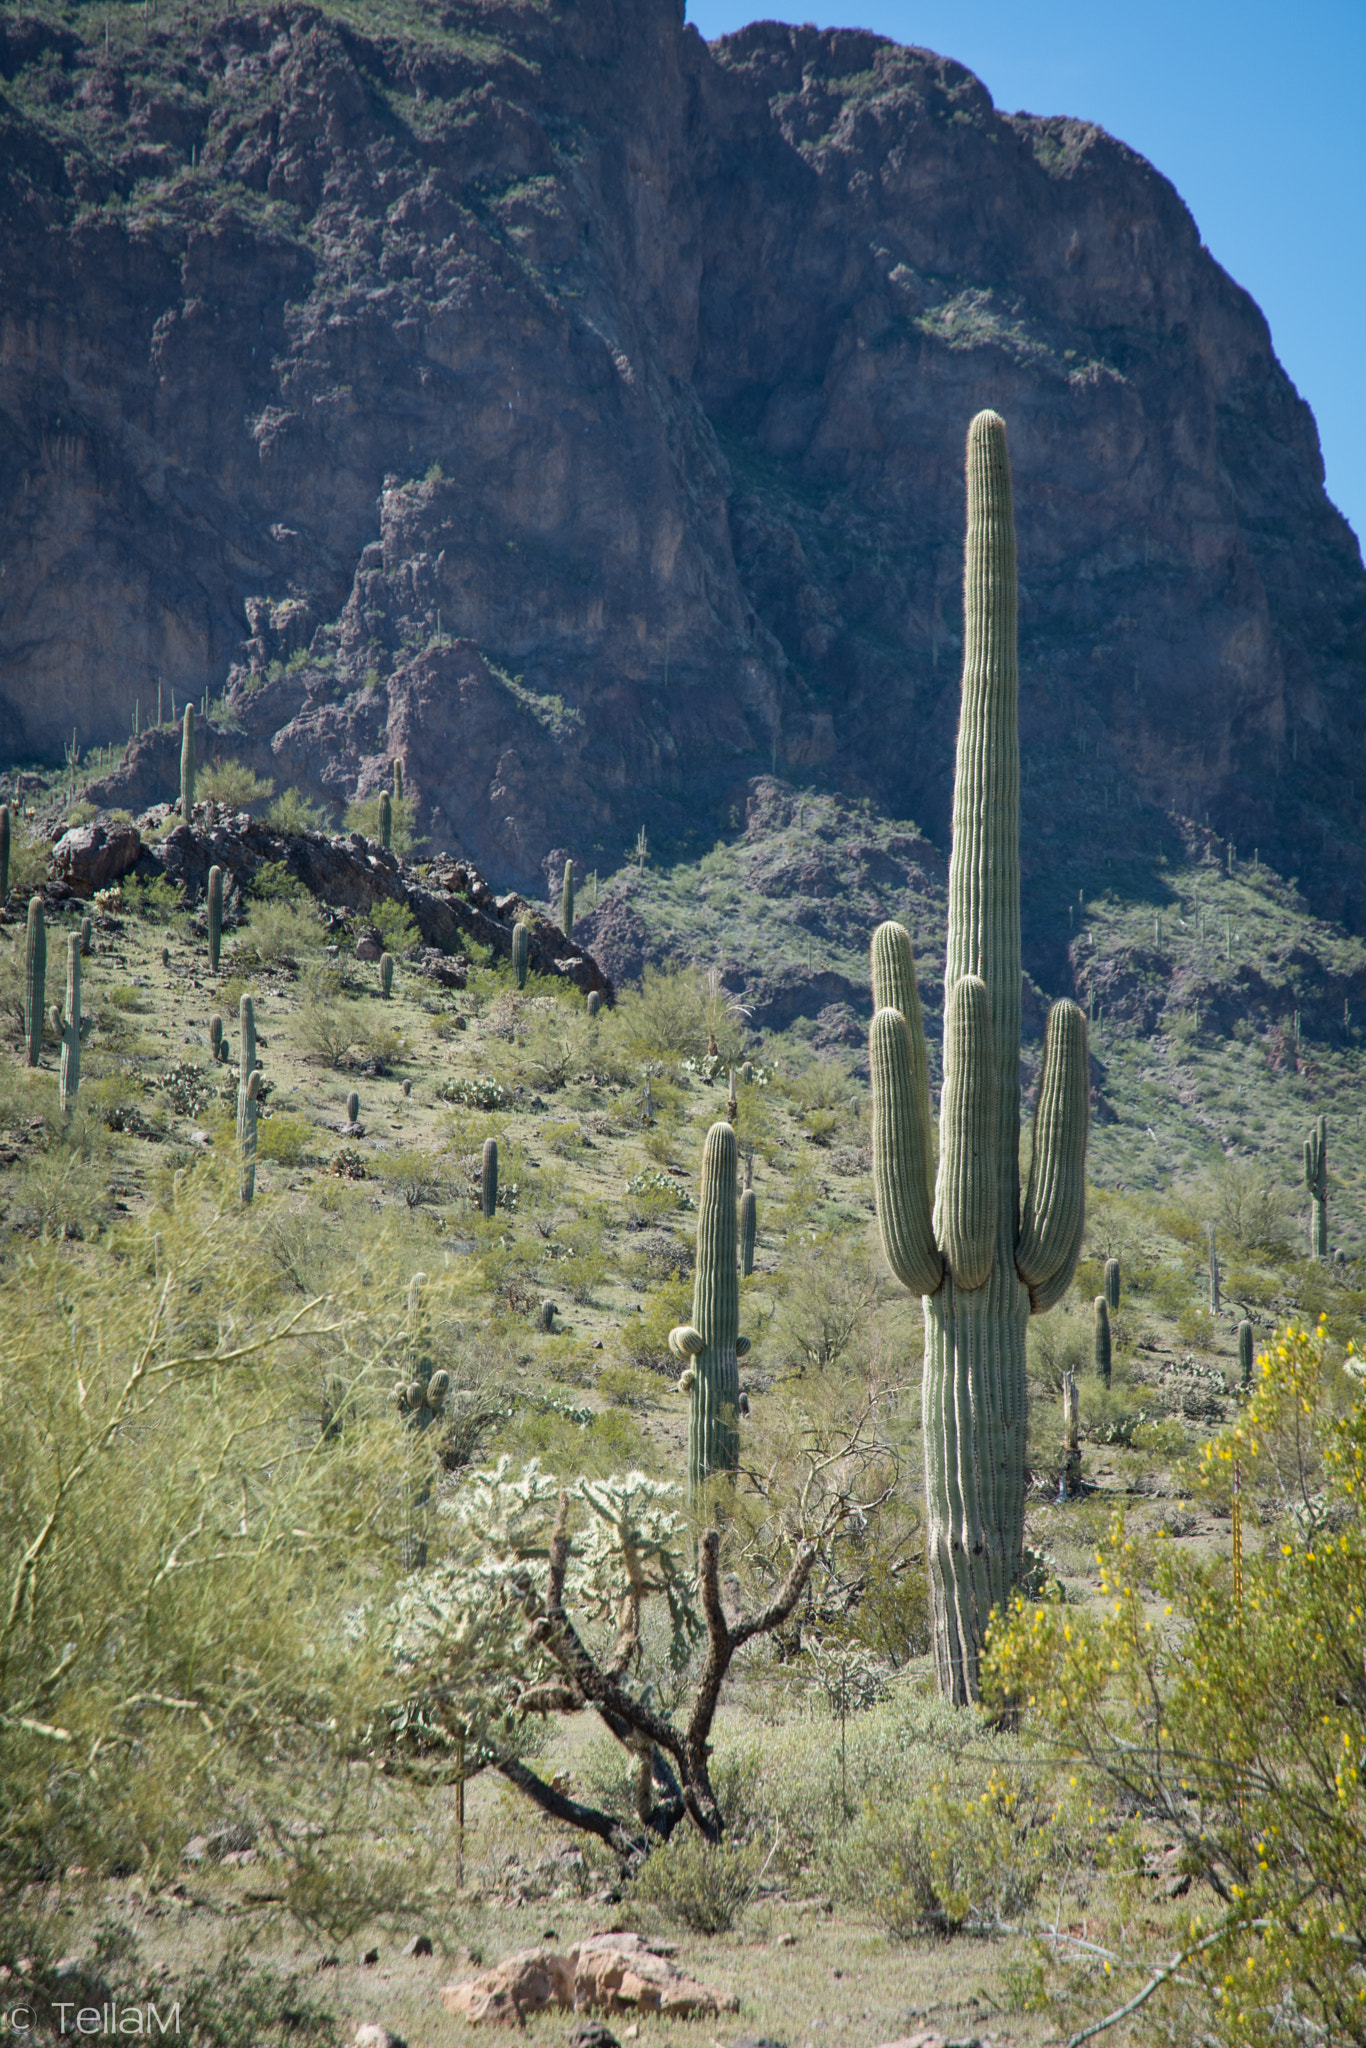 Nikon D7100 sample photo. Saguaro cactus, arizona photography